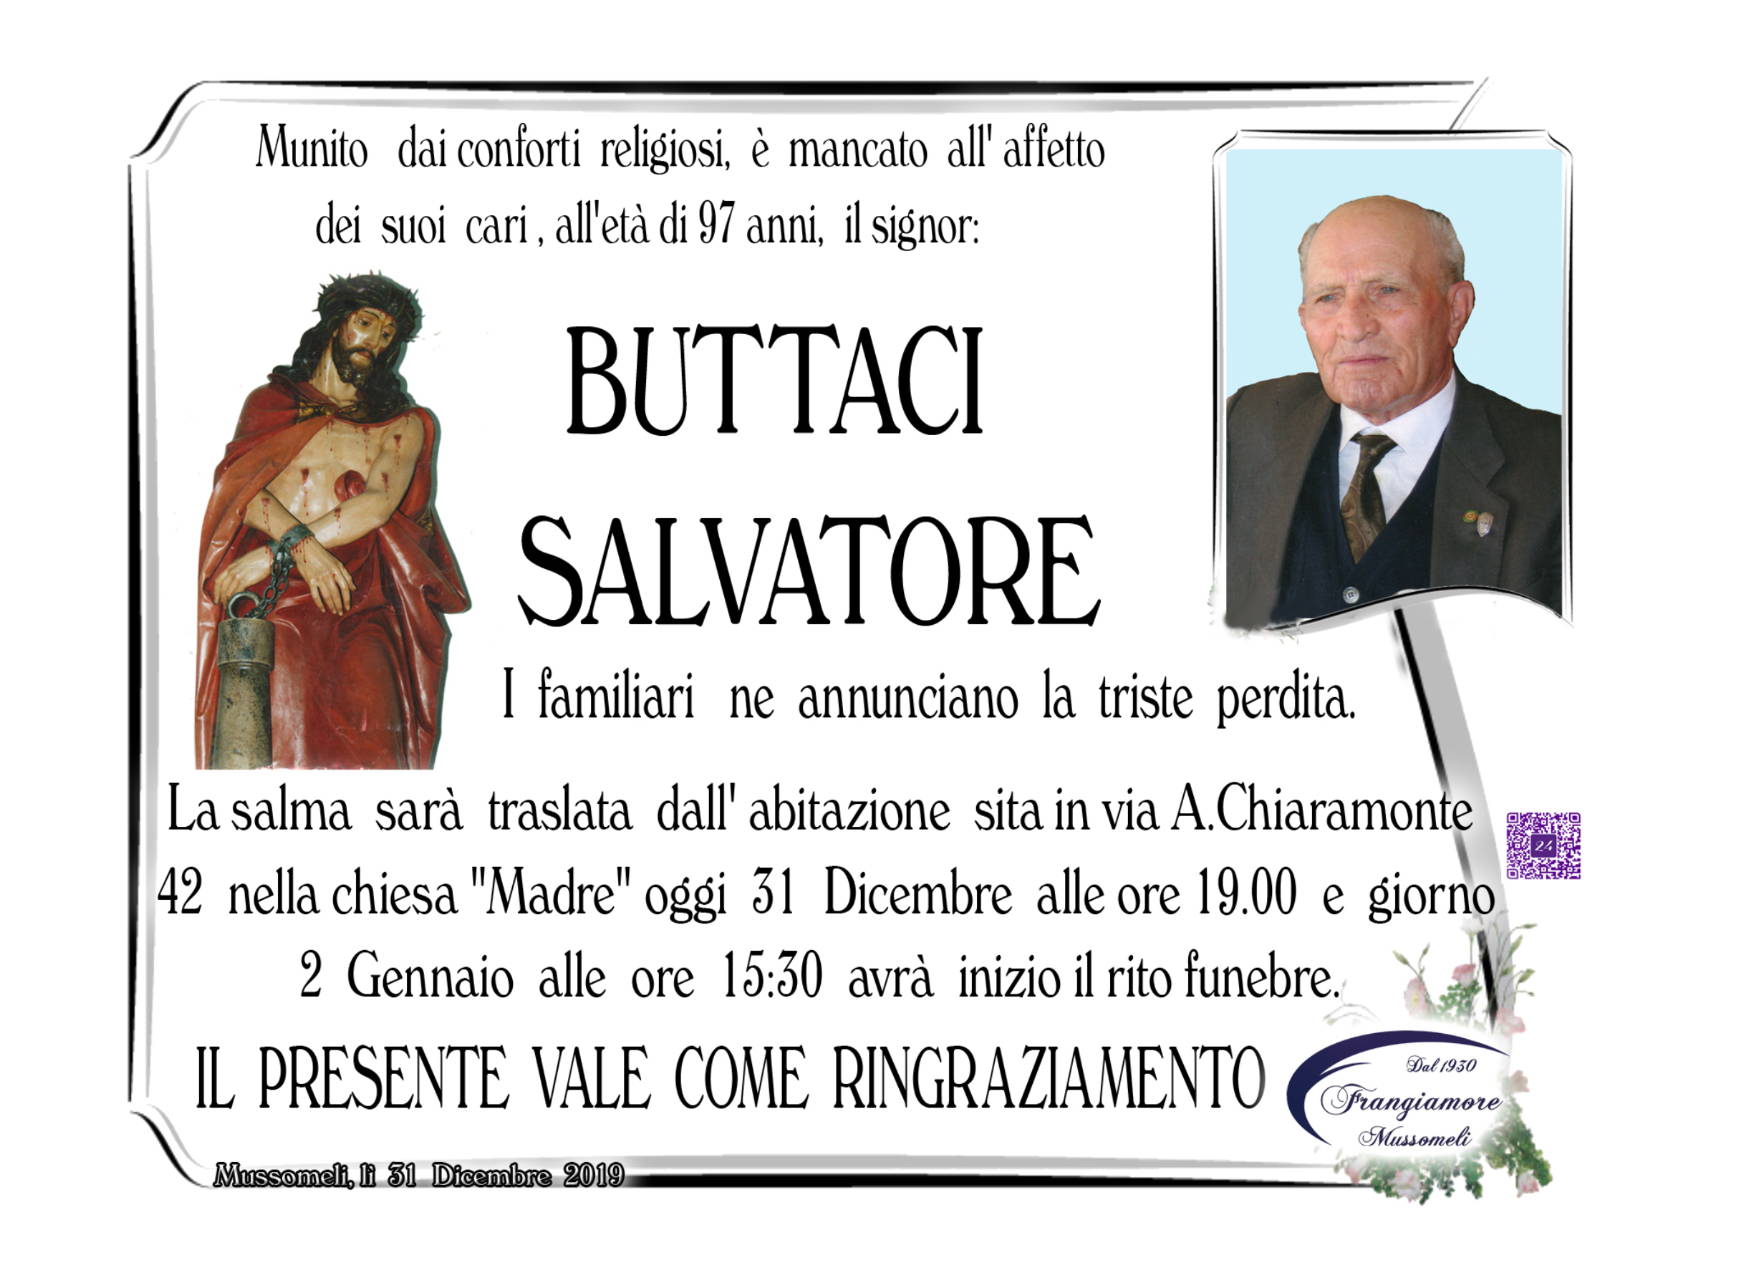 Salvatore Buttaci